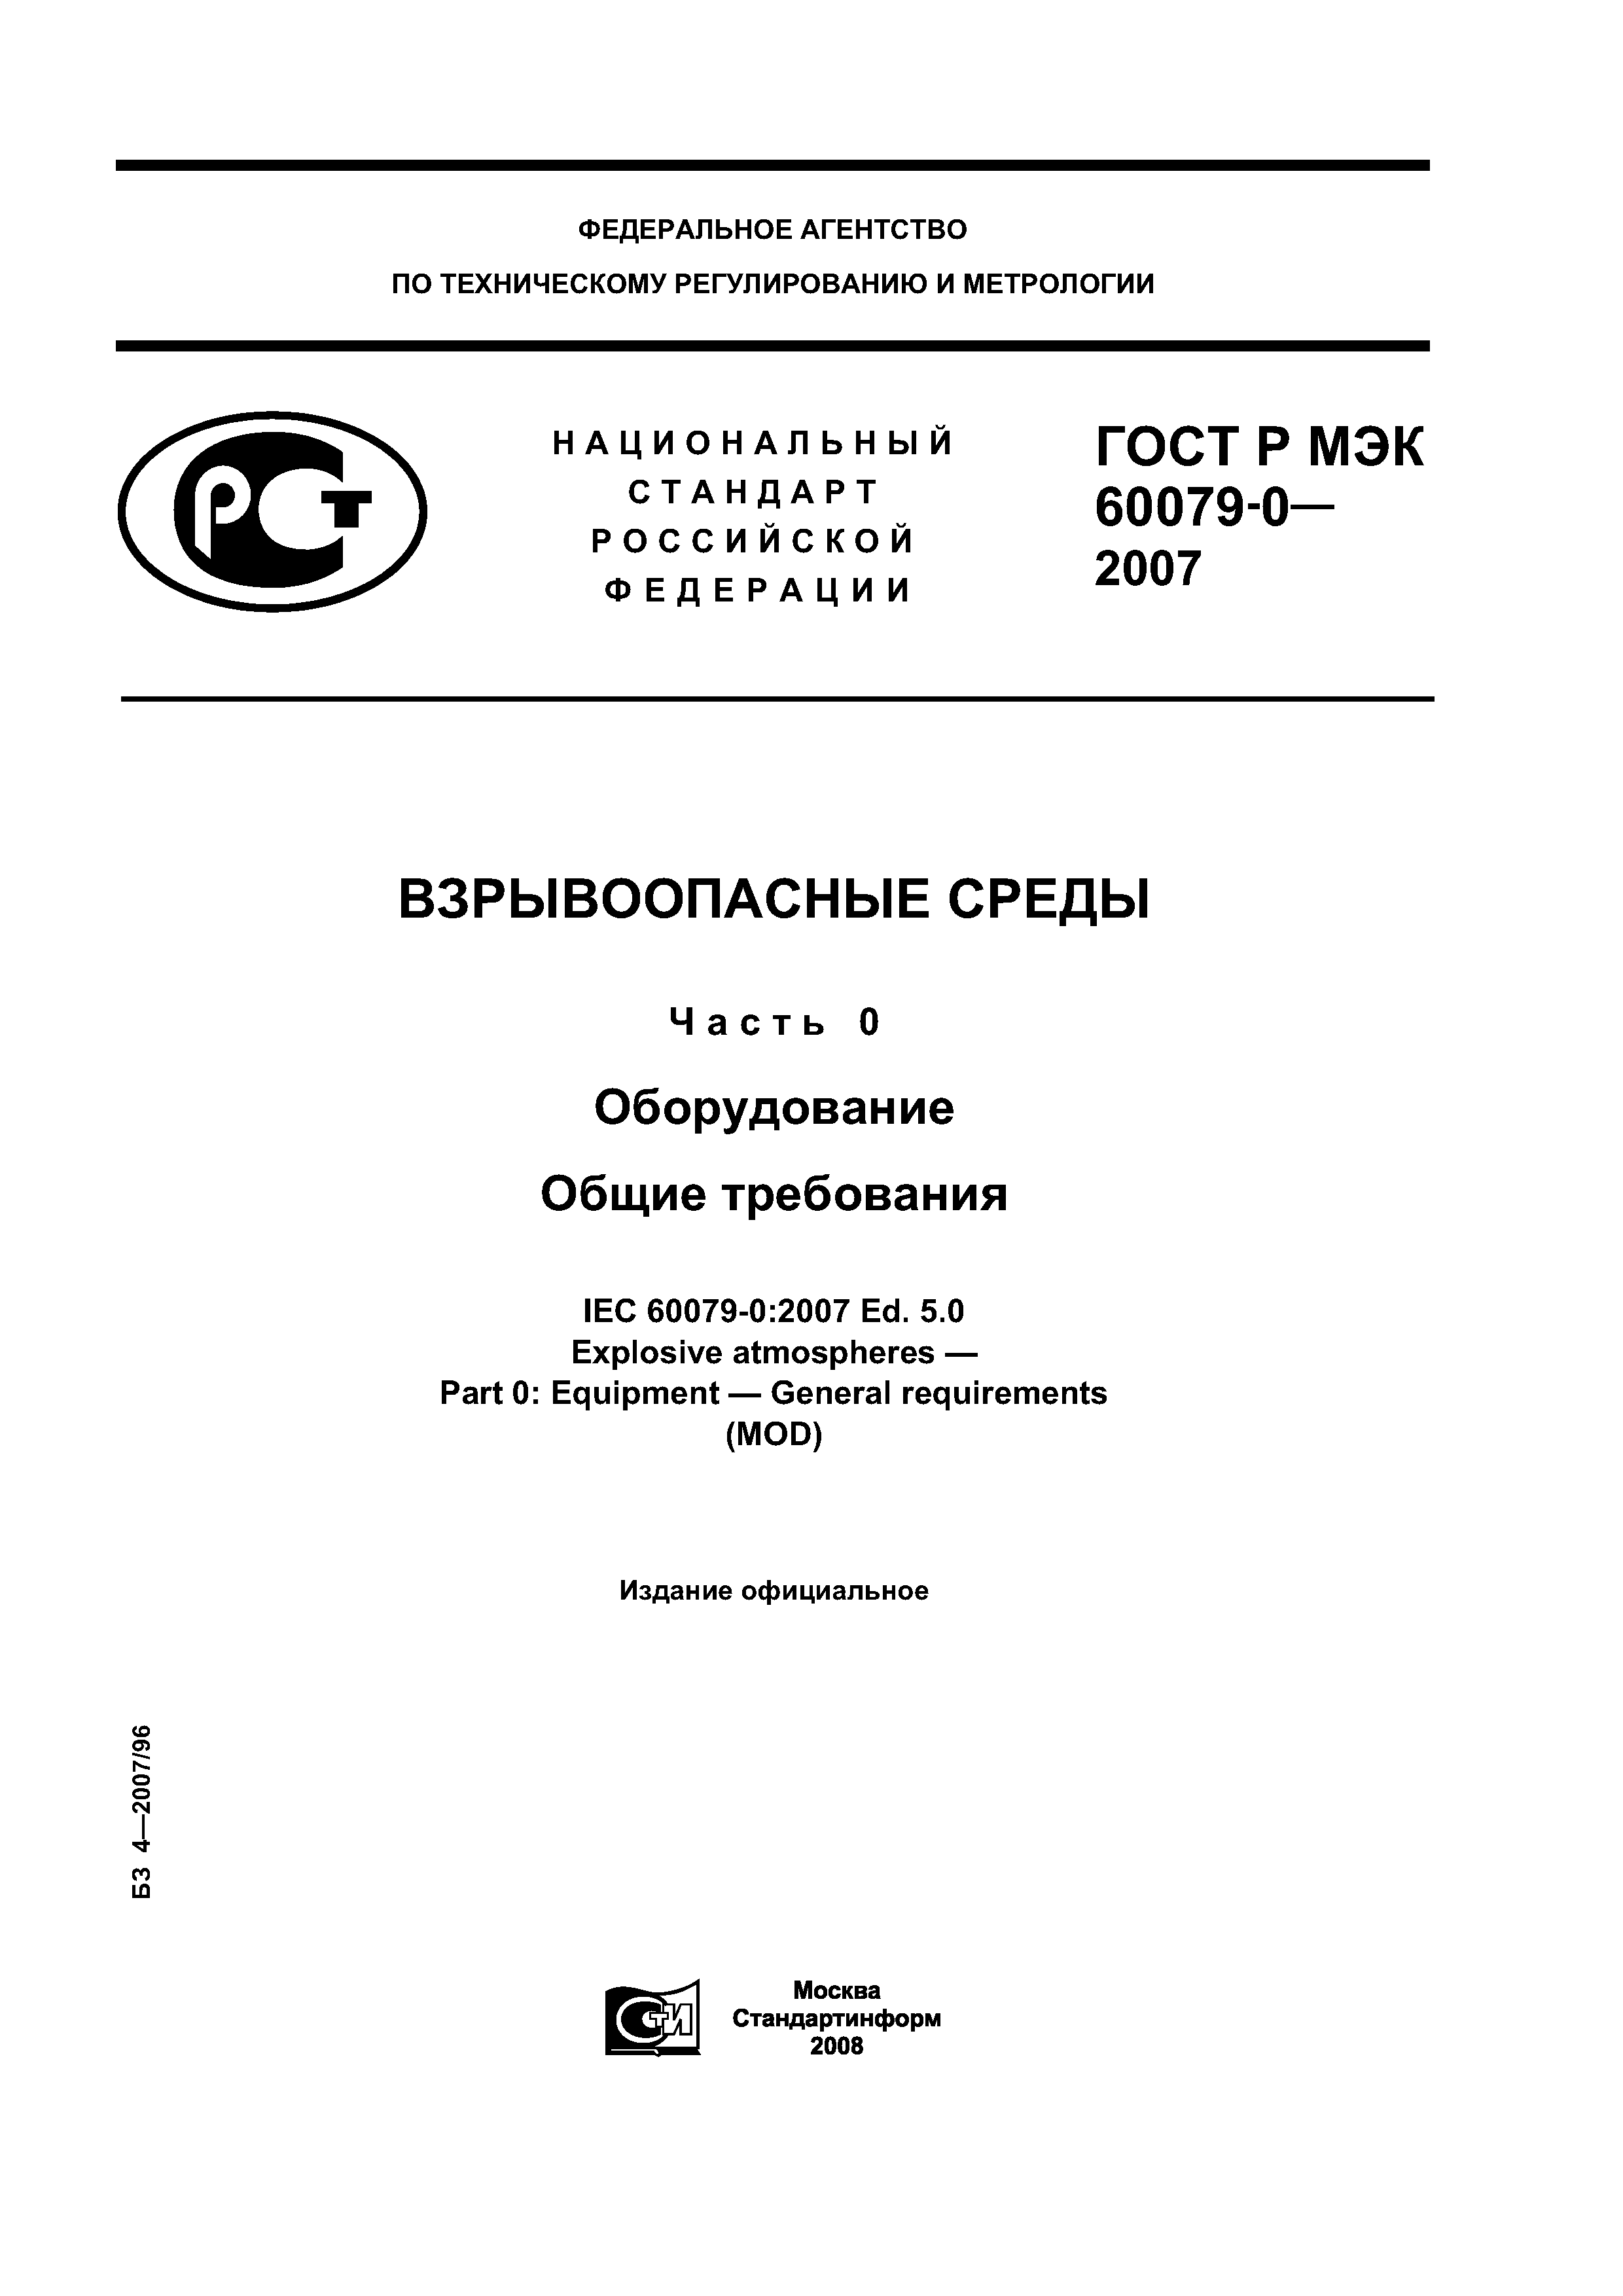 ГОСТ Р МЭК 60079-0-2007